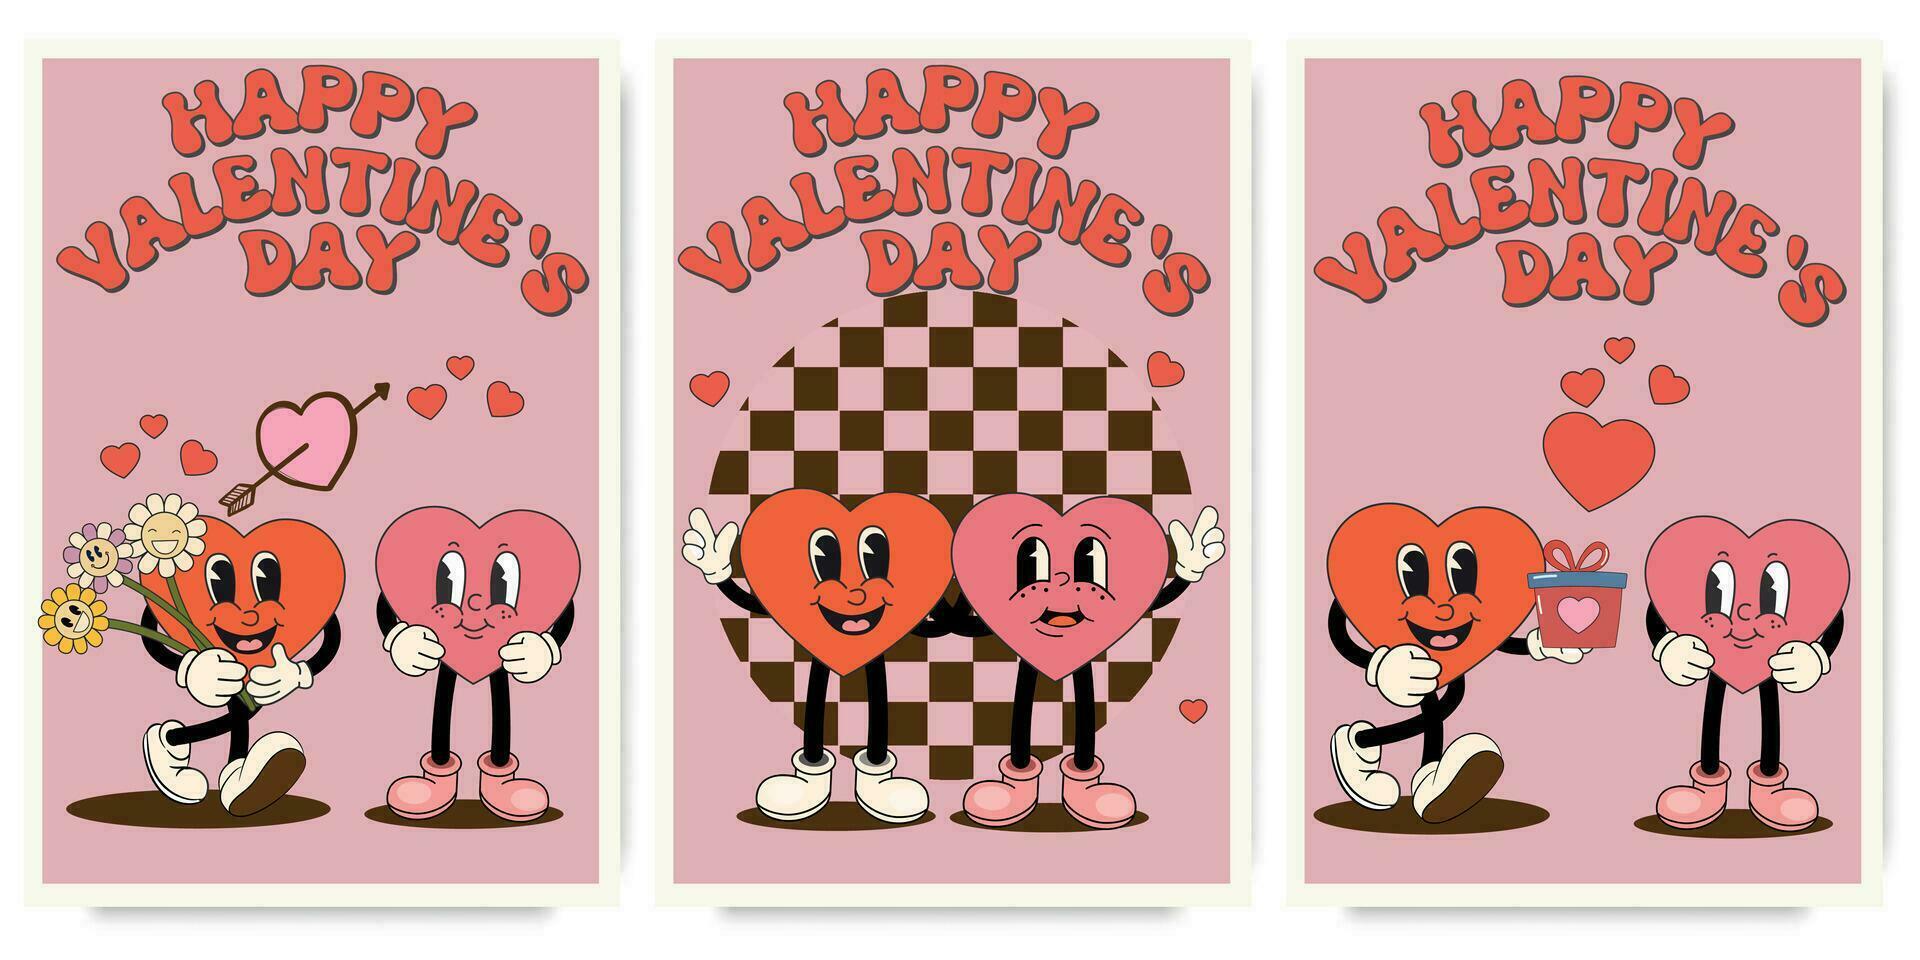 groovy lief harten posters met liefde karakter . liefde concept. gelukkig valentijnsdag dag groet kaart. funky achtergrond in modieus retro Jaren 60 jaren 70 tekenfilm stijl. vector illustratie